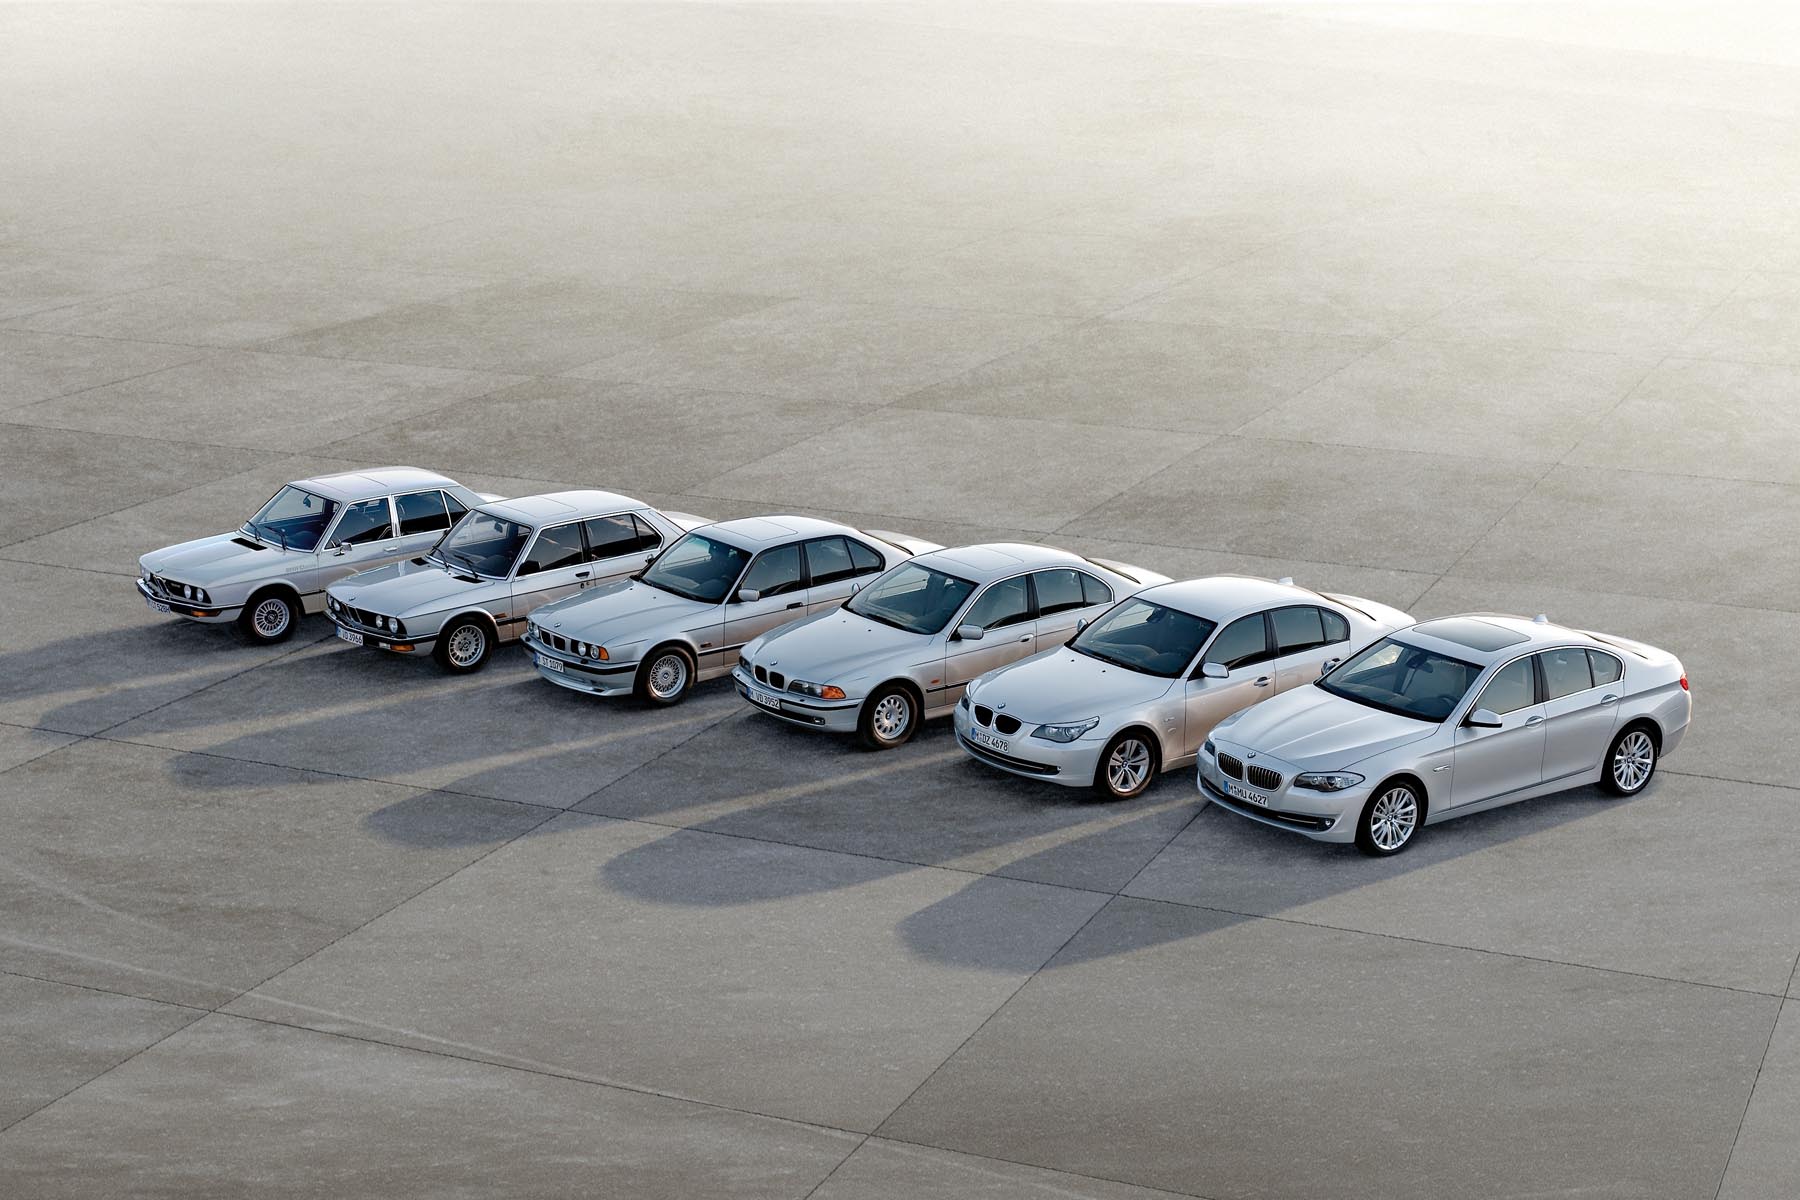 Noul BMW Seria 5 F 10 este a 6-a generatie a berlinei bavareze de clasa mare